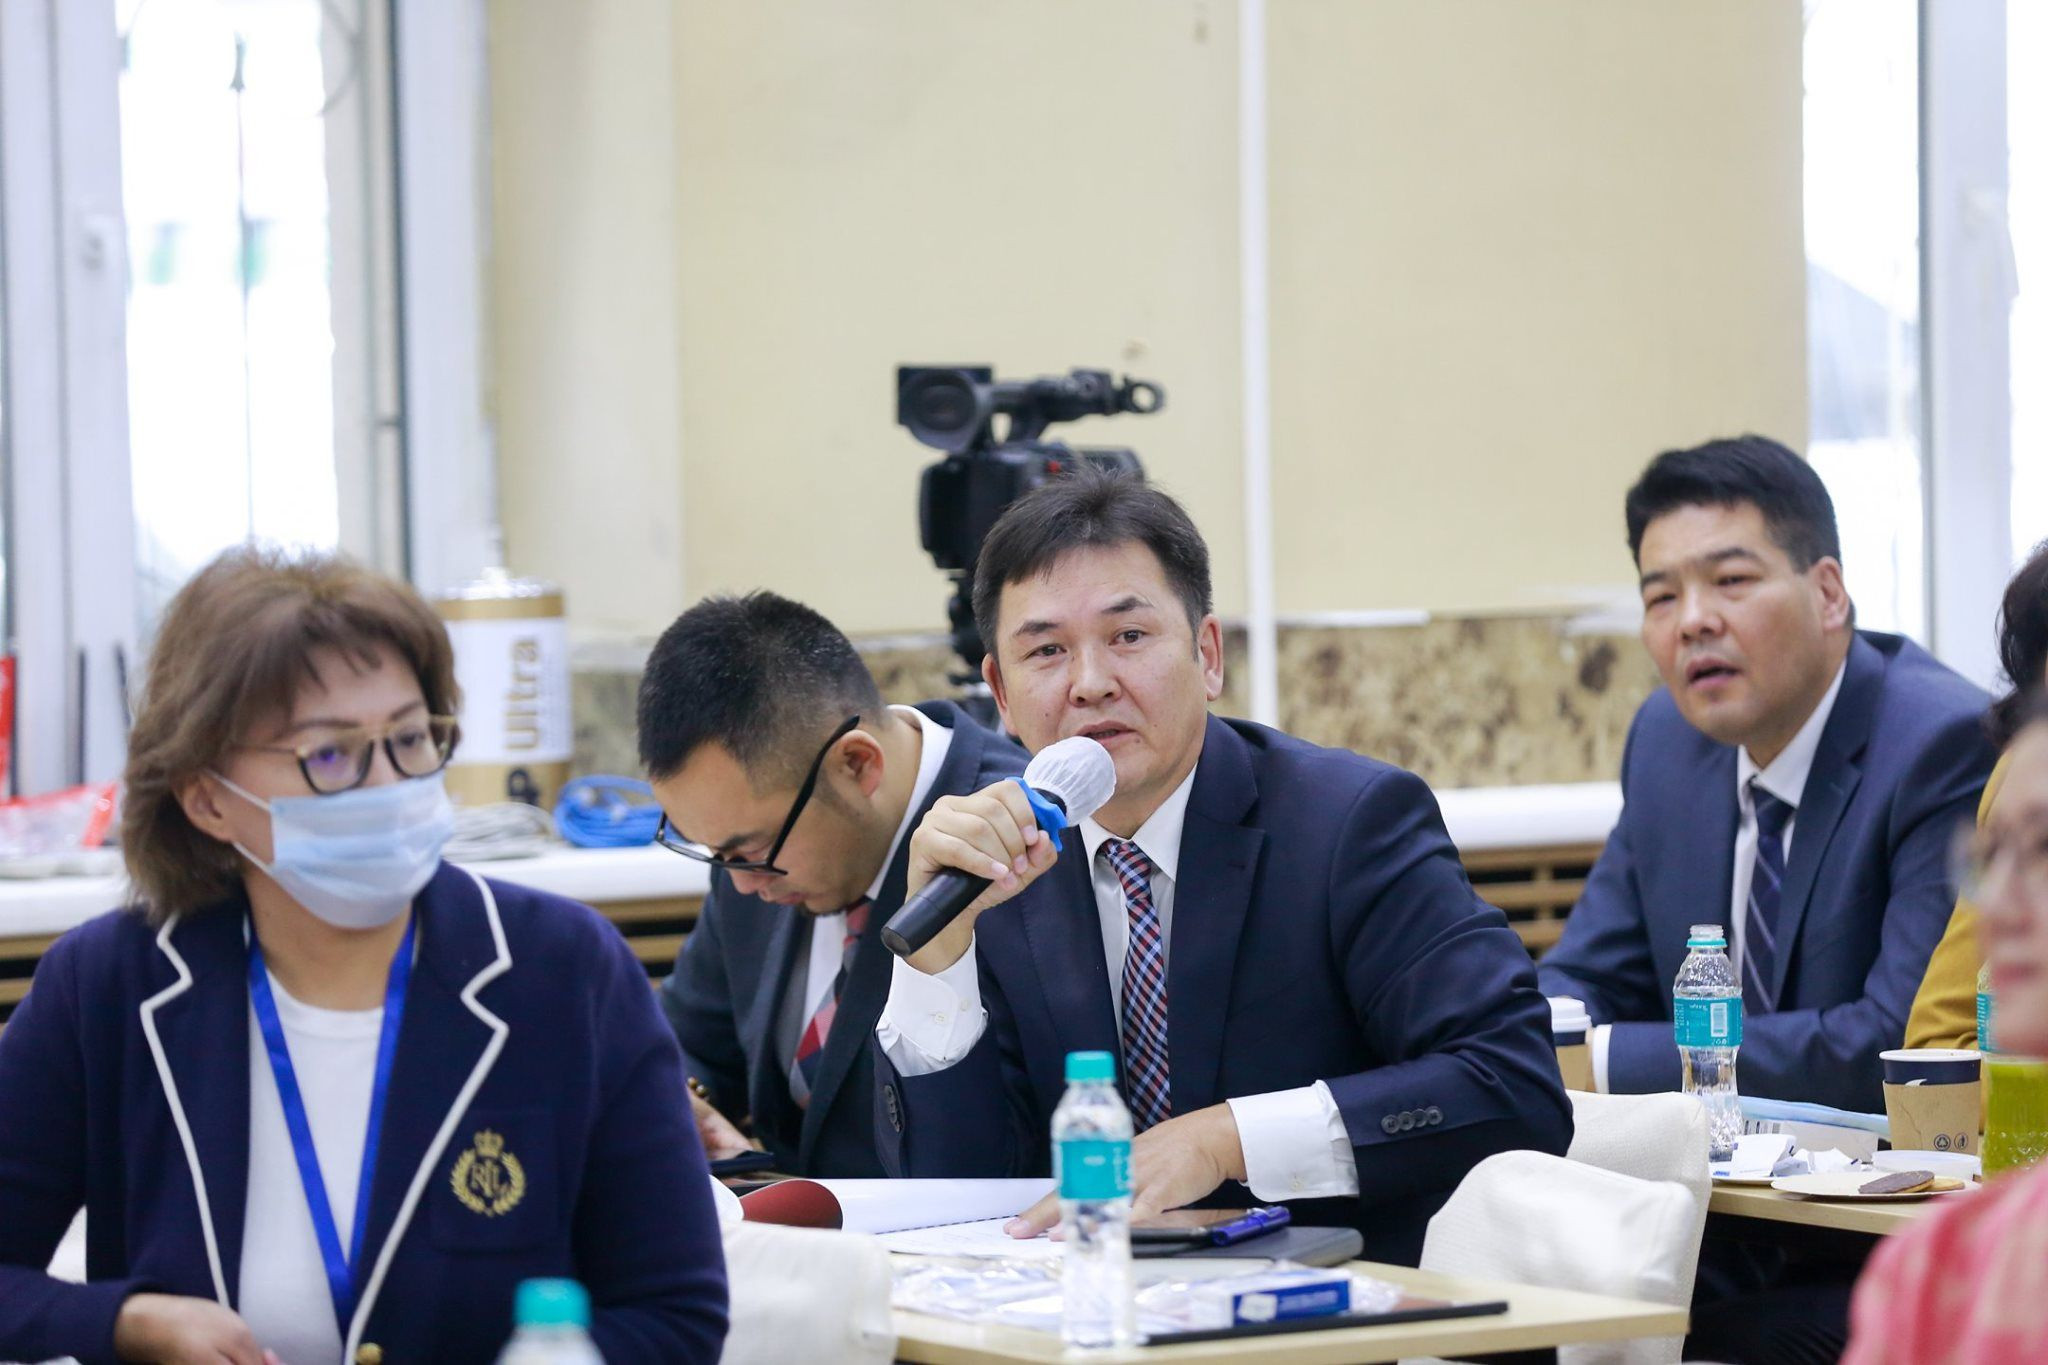 Арьс Өвчин Судлалын Үндэсний Төвийн ерөнхий захирал, АУ-ны магистр, Клиникийн профессор Ц.Уранчимэг хөгжлийн хөтөлбөрөө танилцууллаа.